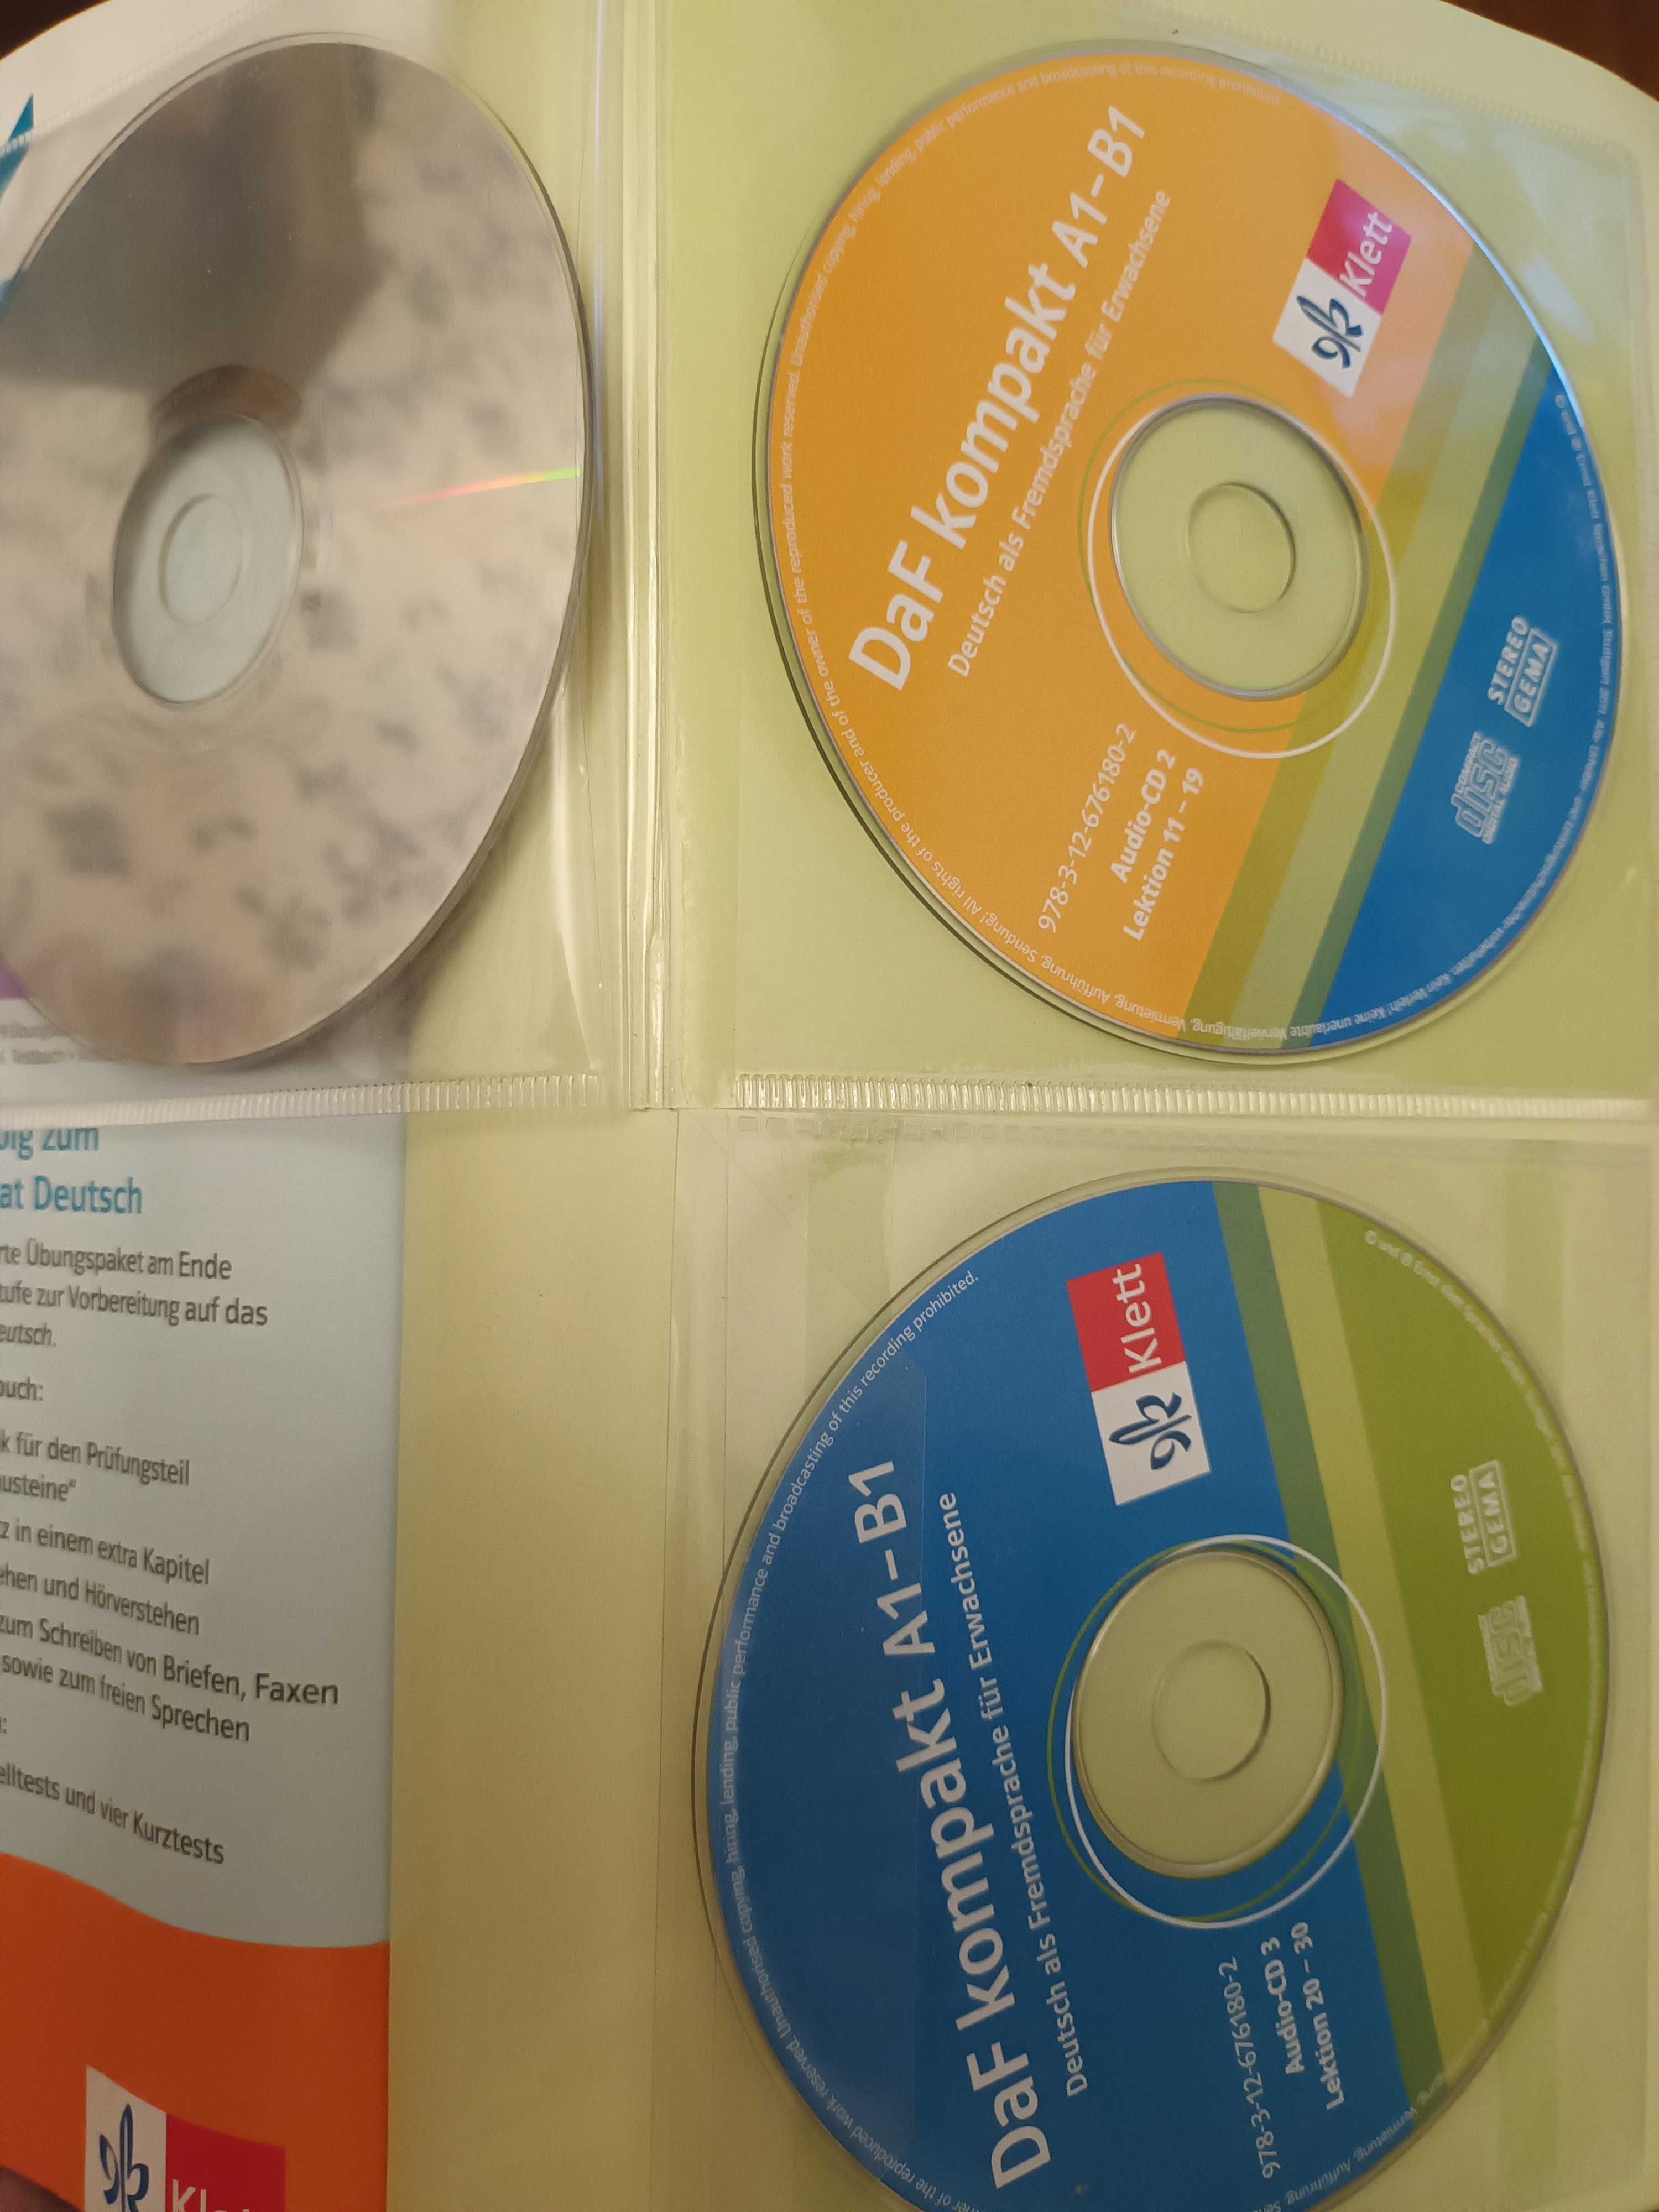 DaF kompakt A1-B1 Kursbuch mit 3 Audio-CDs
Niemiecki dla dorosłych